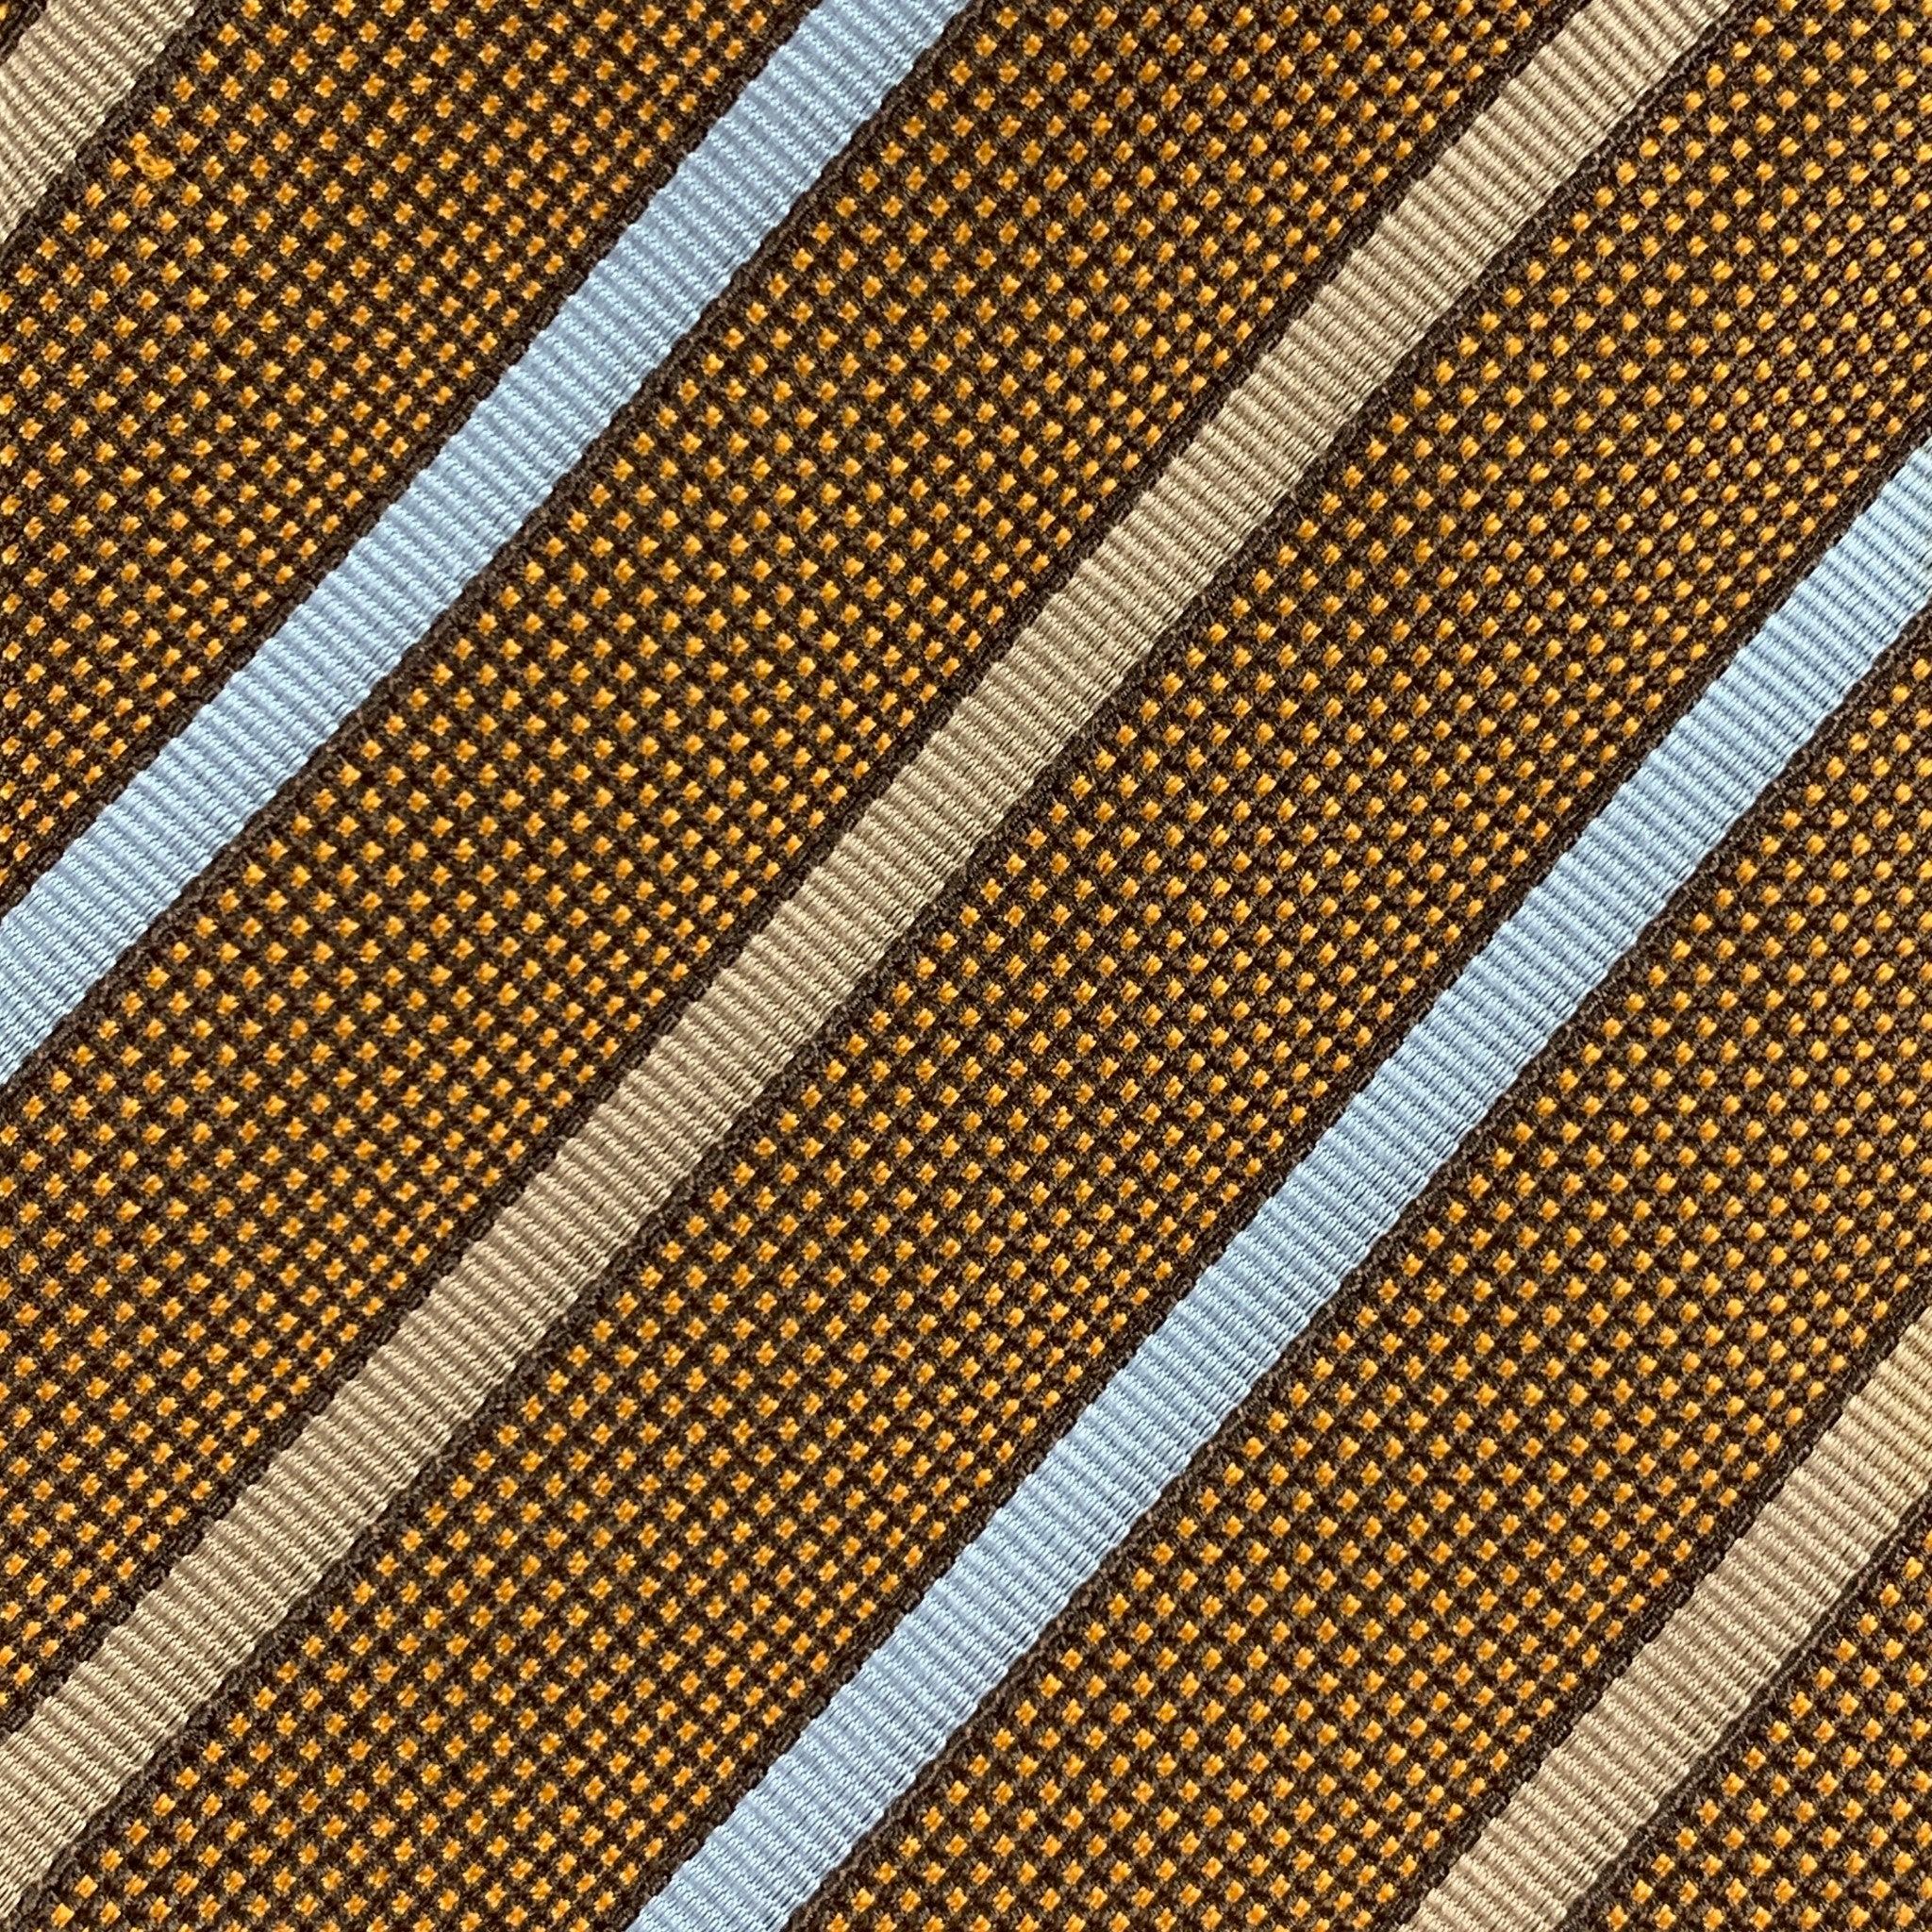 Die klassische Krawatte von BORRELLI besteht aus 100% Seide und zeigt ein blau-braunes, diagonal gestreiftes Design. Made in Italy. sehr guter gebrauchter Zustand. 

Abmessungen: 
  Breite: 3,5 Zoll Länge: 58 Zoll 



  
  
 
Sui Generis-Referenz: